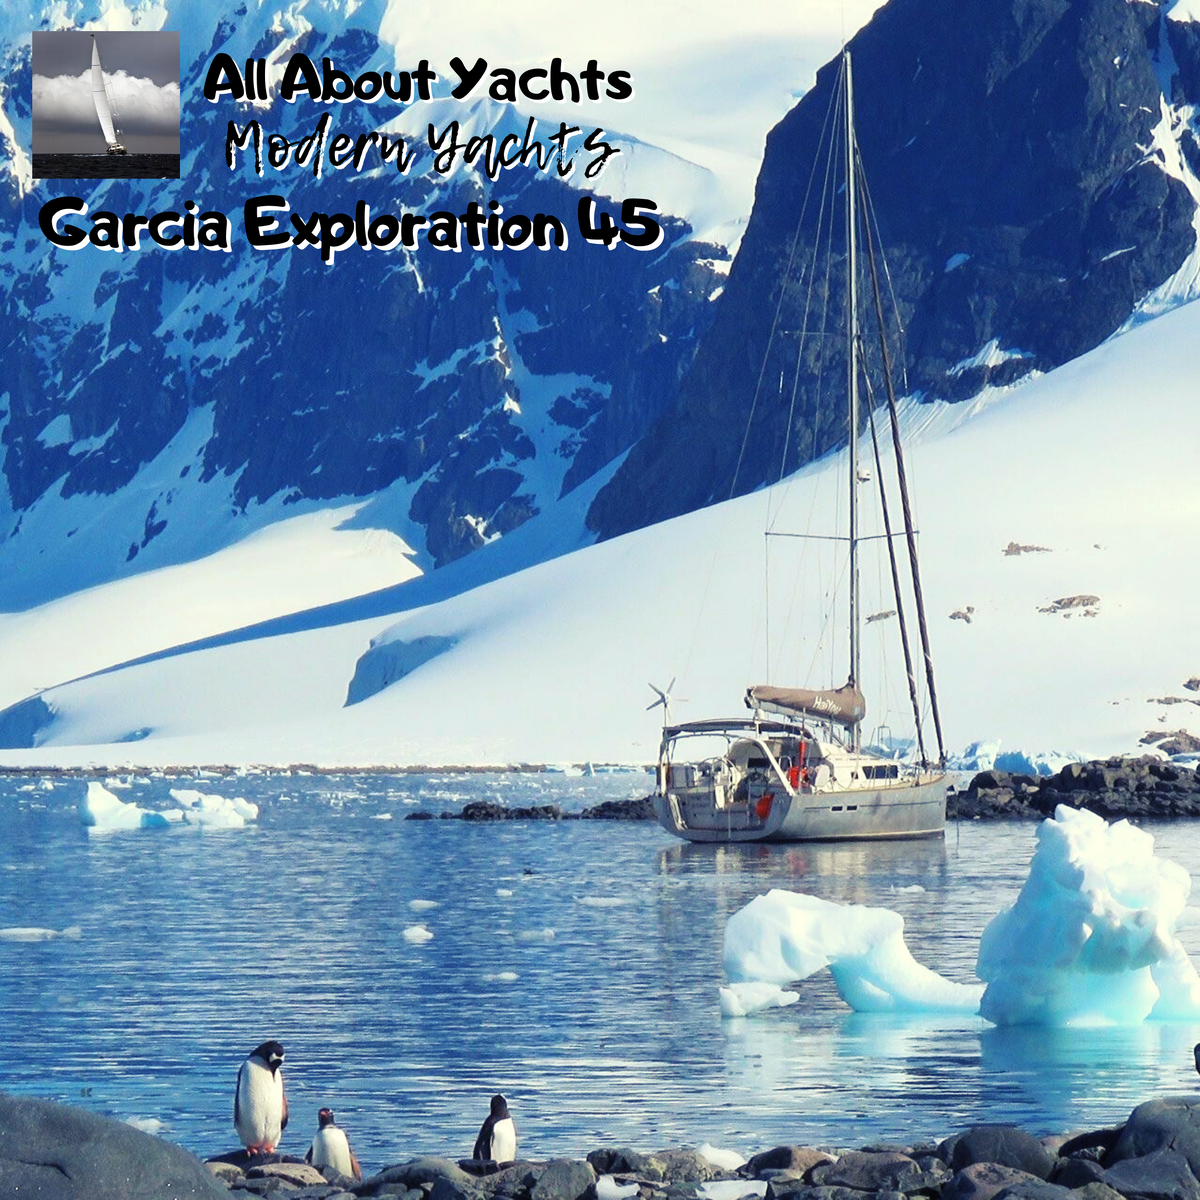 Яхта Garcia Exporation 45 - дитя легендарного яхтсмена Джимми Корнелла и всемирно известной верфи Garcia Yachting.-2